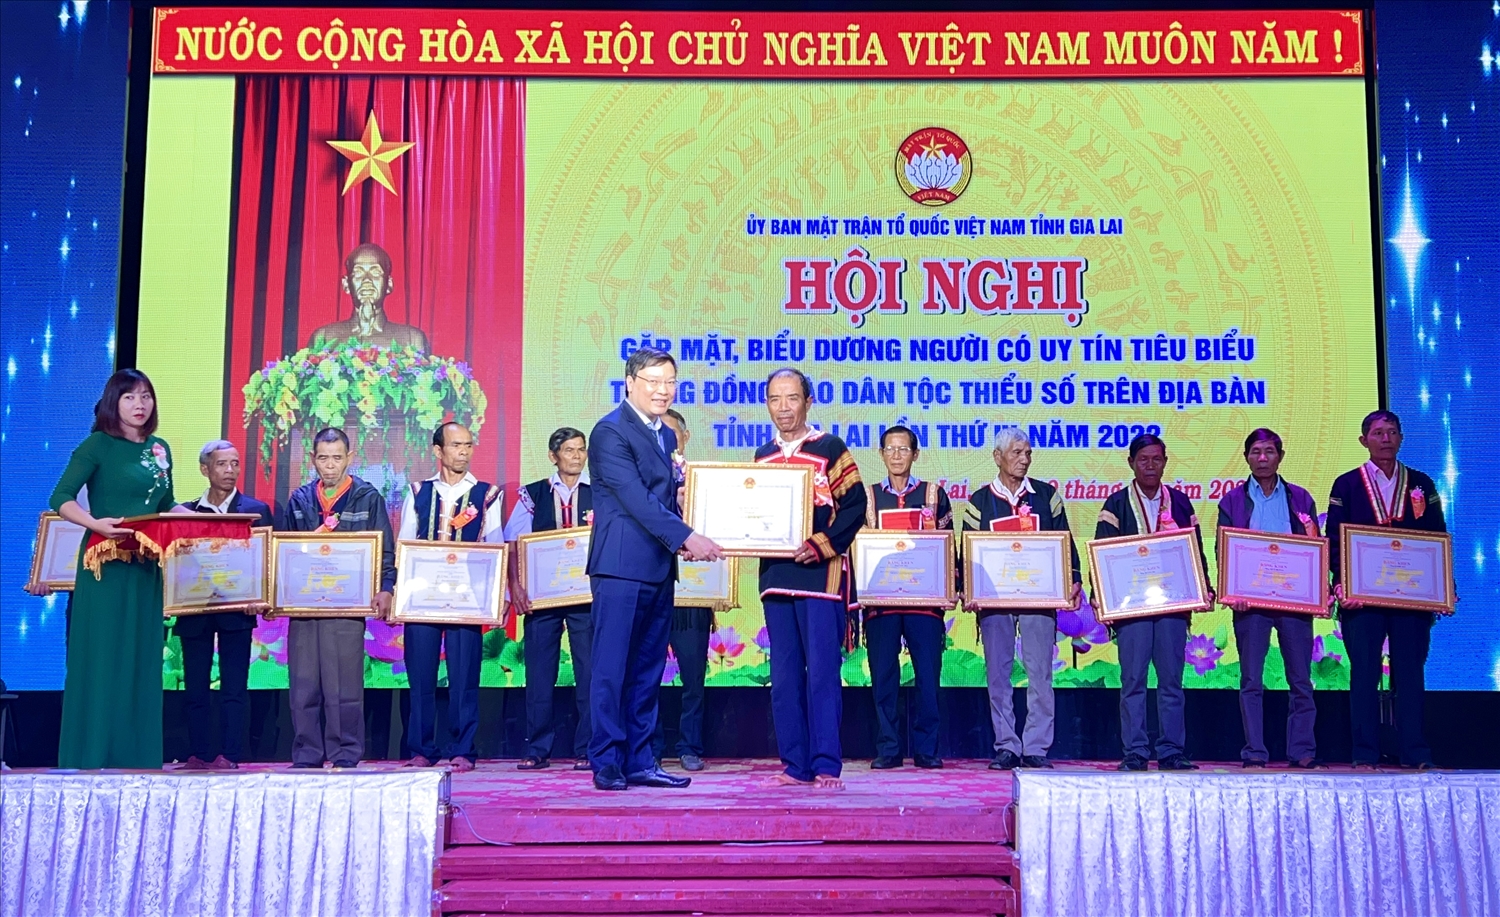 Chủ tịch UBND tỉnh Gia Lai tặng Bằng khen cho Người có uy tín tiêu biểu trong đồng bào DTTS